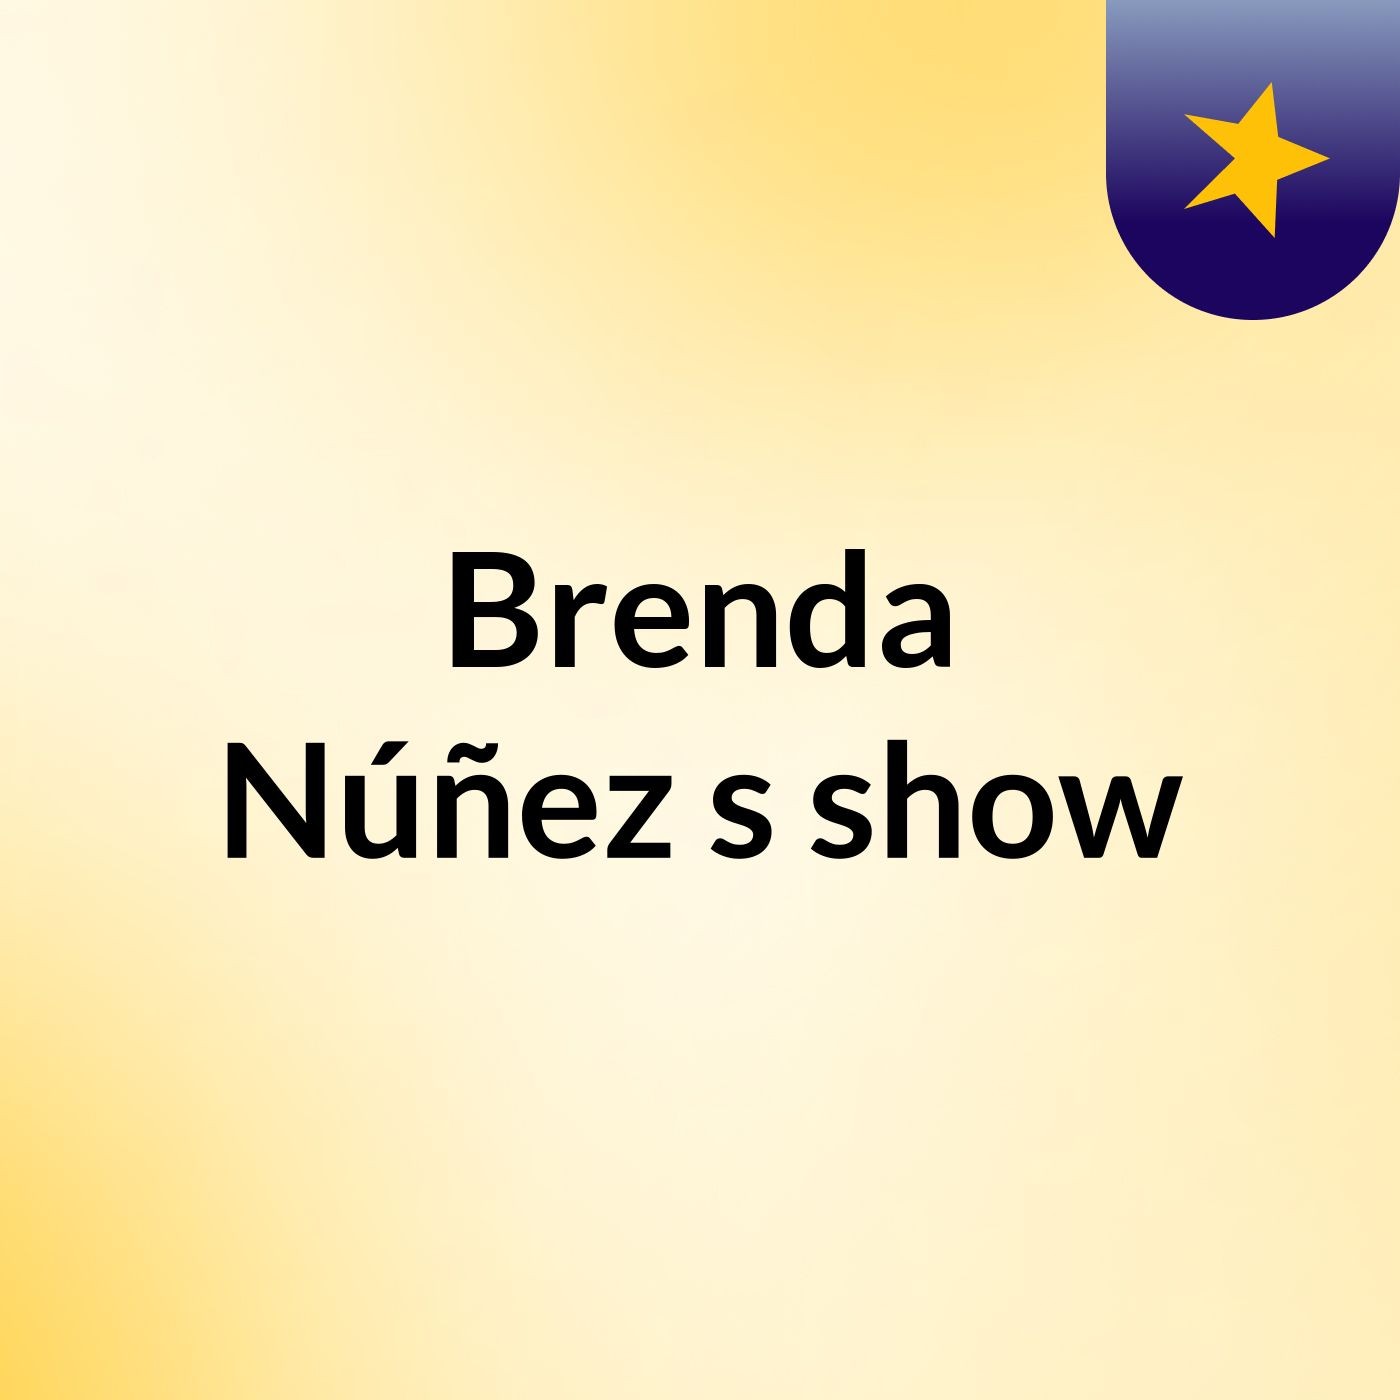 Brenda Núñez's show